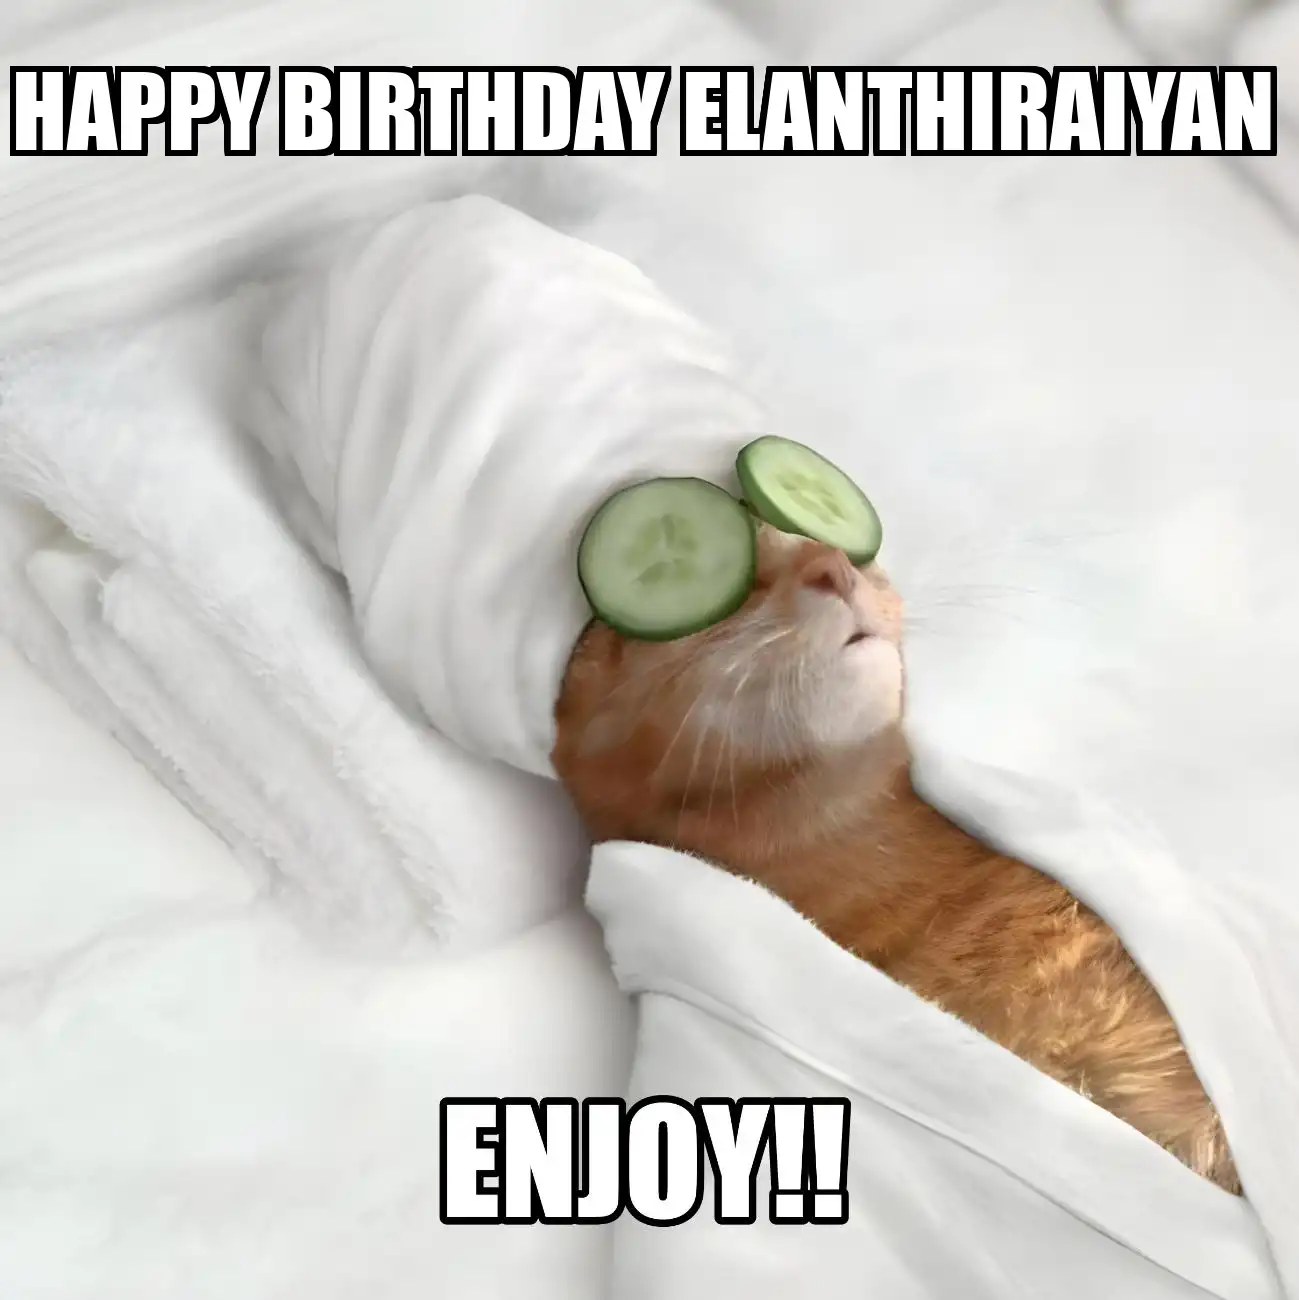 Happy Birthday Elanthiraiyan Enjoy Cat Meme